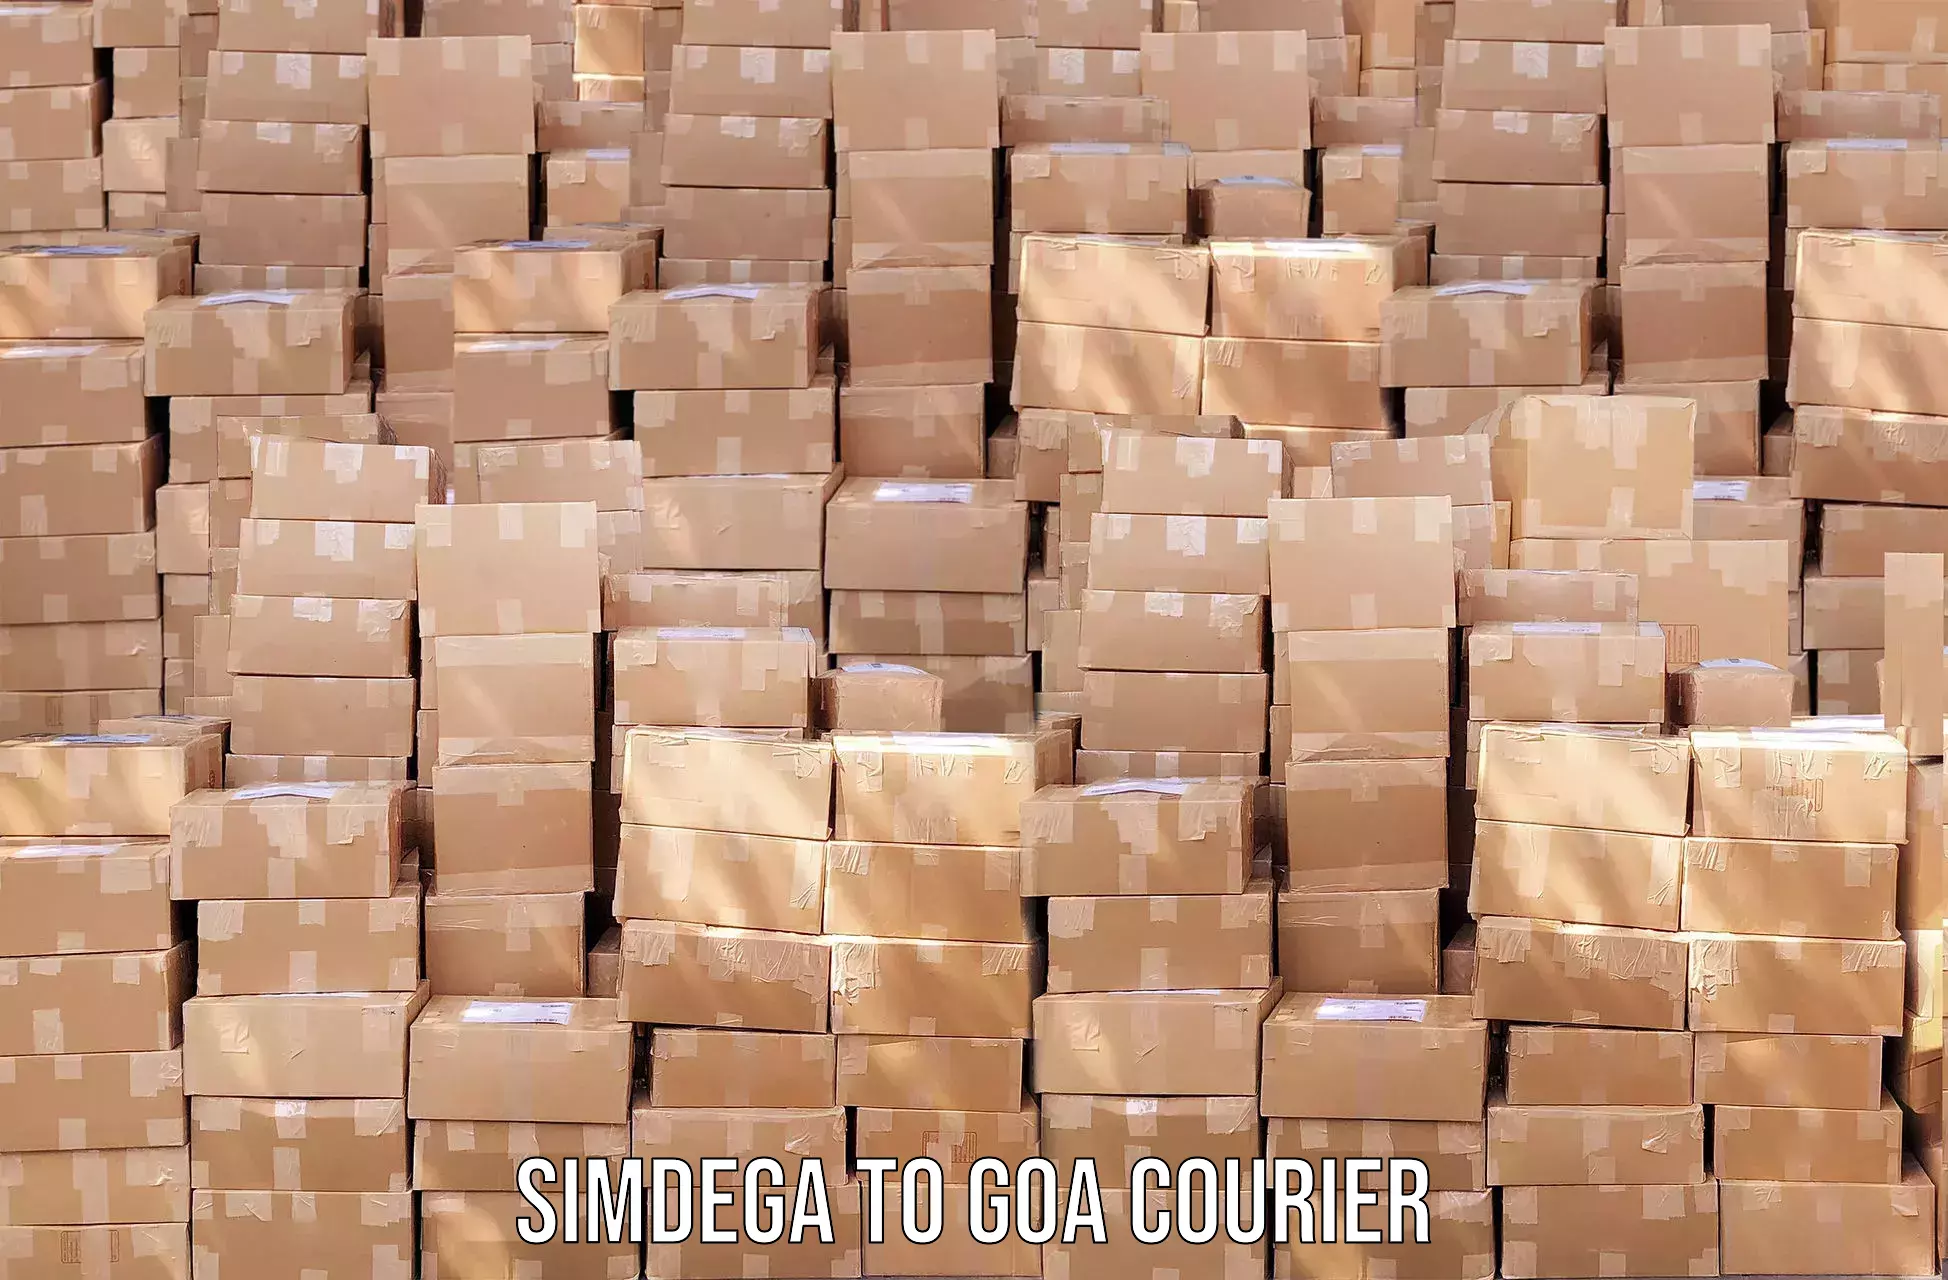 Small parcel delivery Simdega to Goa